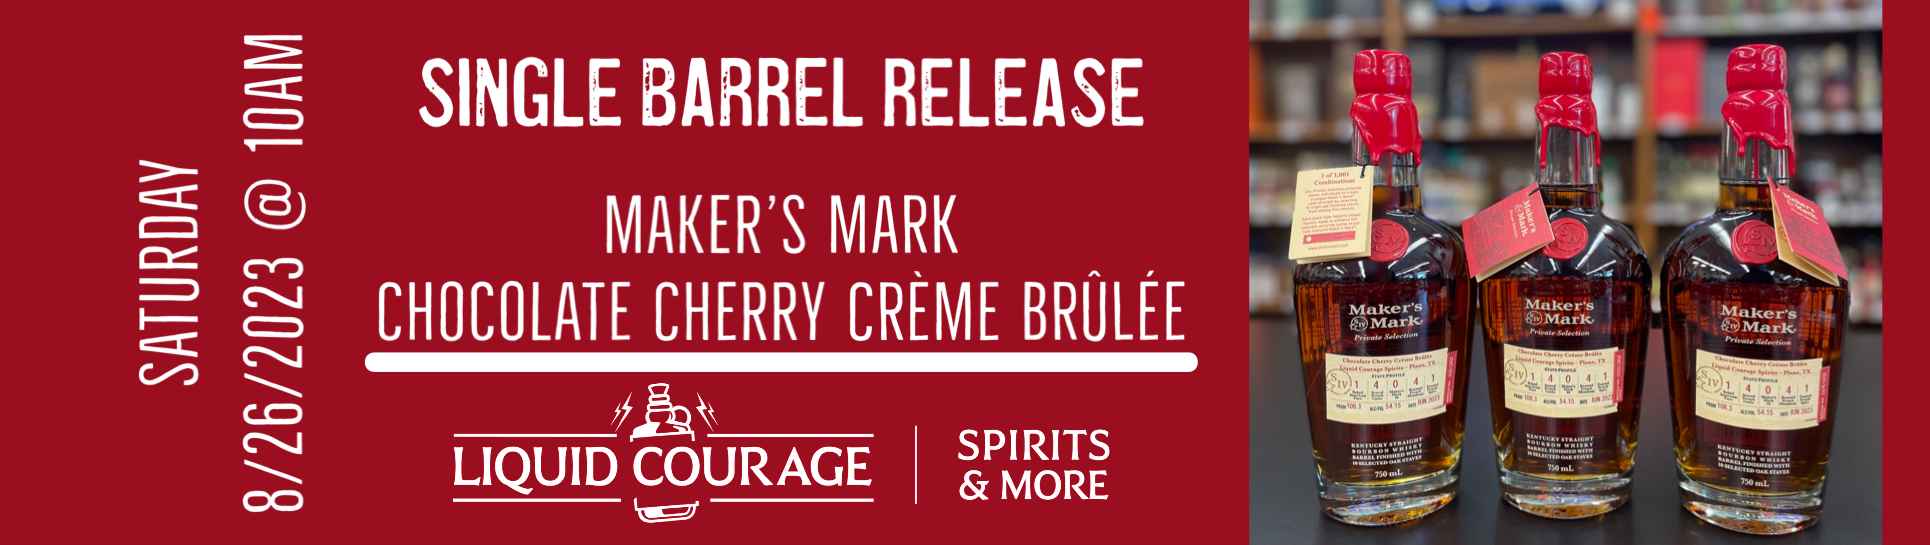 Maker's Mark SiB Release